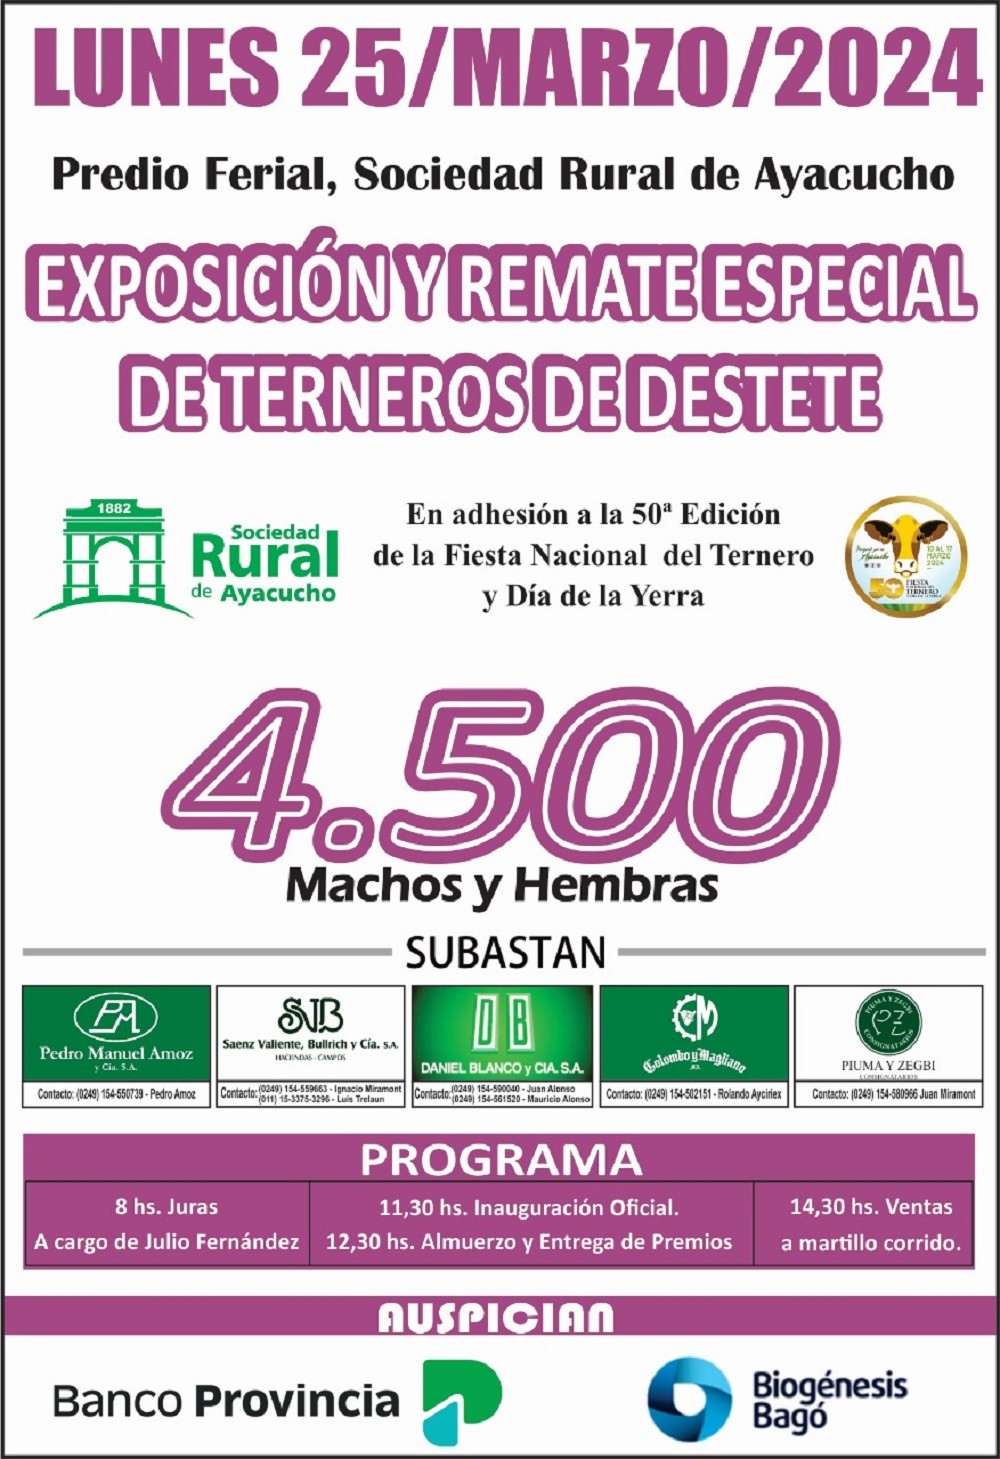 El lunes 25 se realiza el remate especial de terneros de destete en Ayacucho